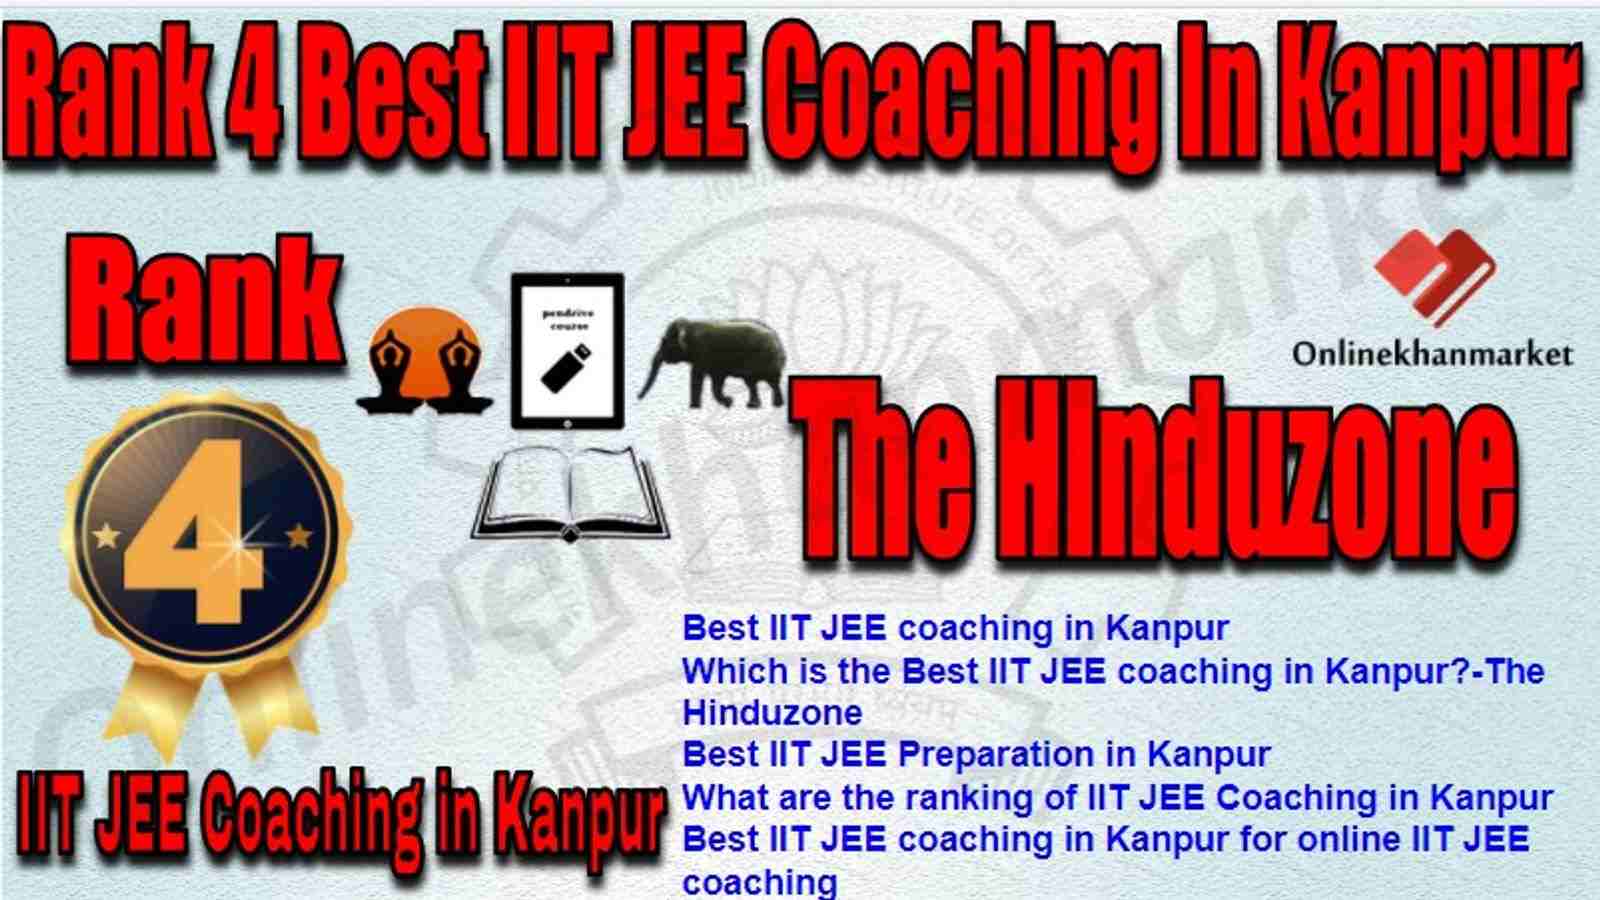 Rank 4 Best IIT JEE Coaching in kanpur